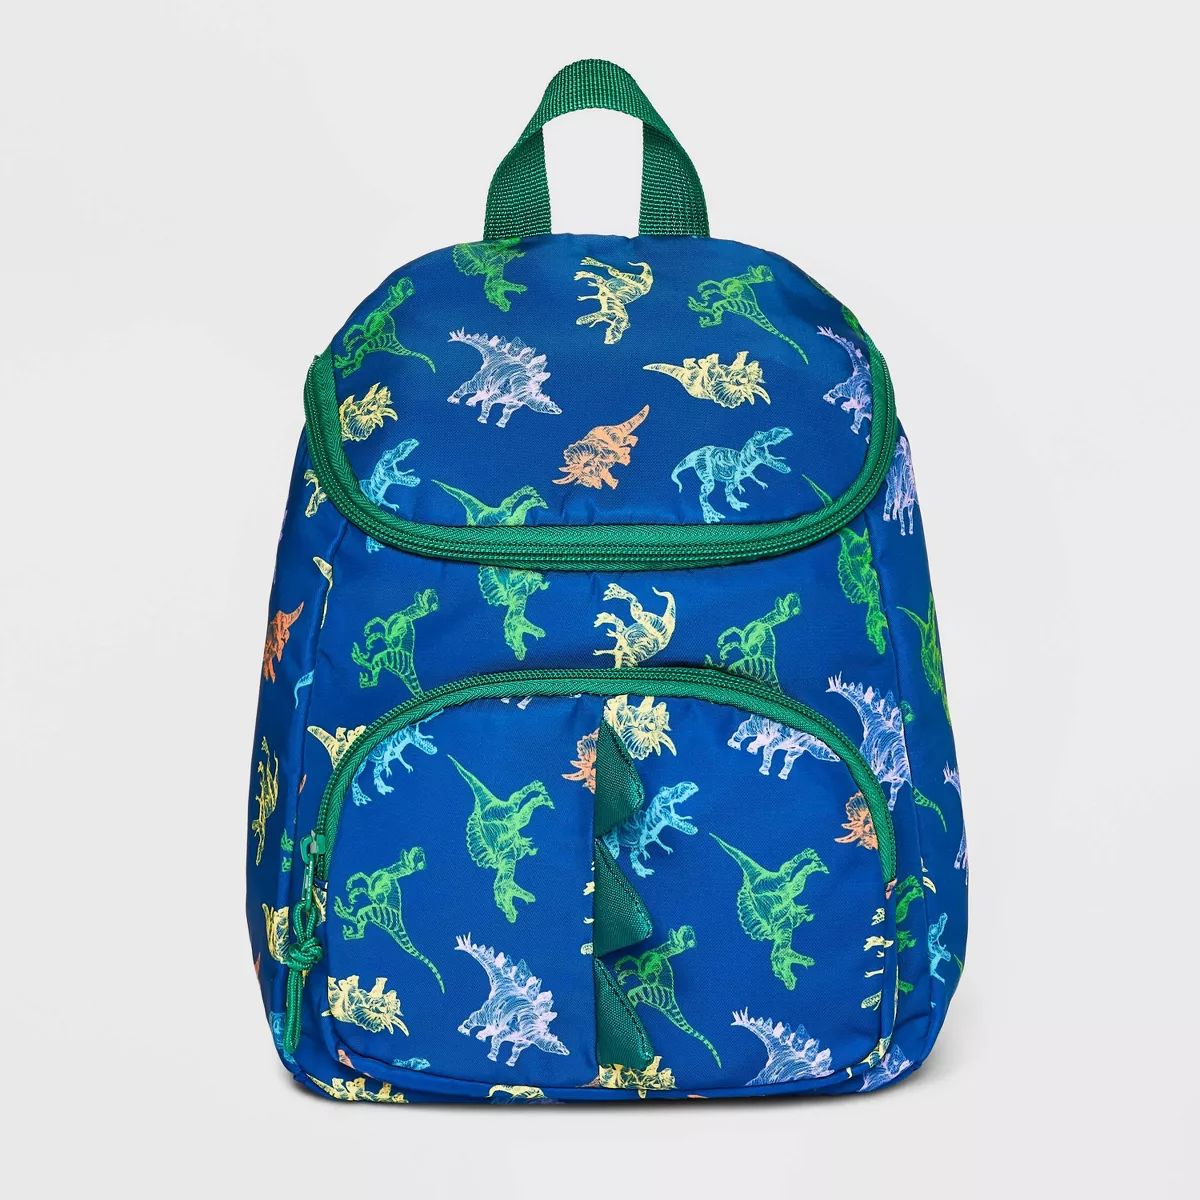 Toddler Boys' 10.5" Dinosaur Backpack - Cat & Jack™ Blue | Target